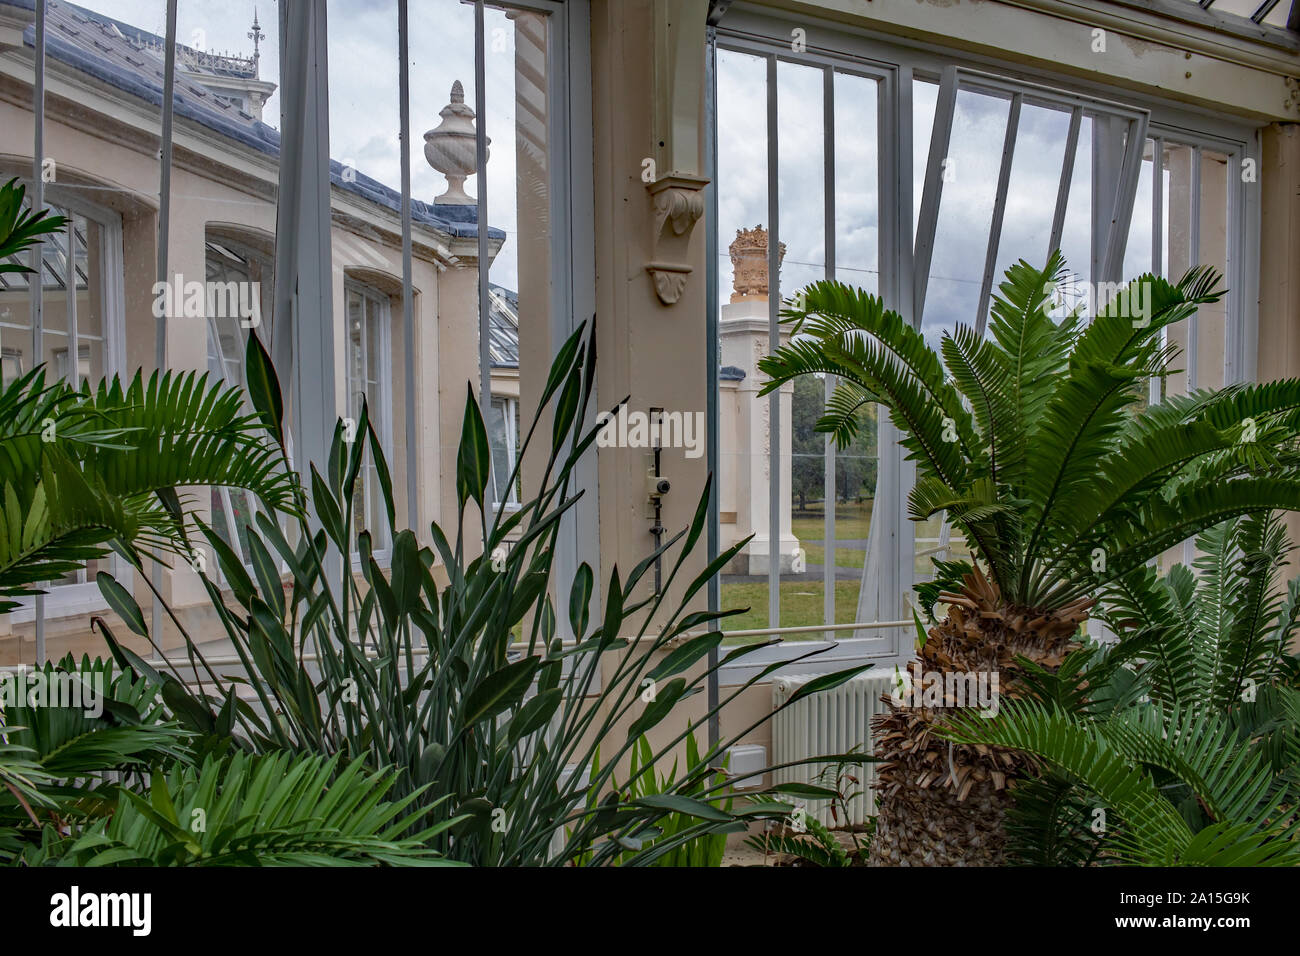 Palmiers et autres plantes qui poussent à l'intérieur de l'Europe, maison, une serre victorienne à Kew Gardens, Richmond, London, England, UK Banque D'Images